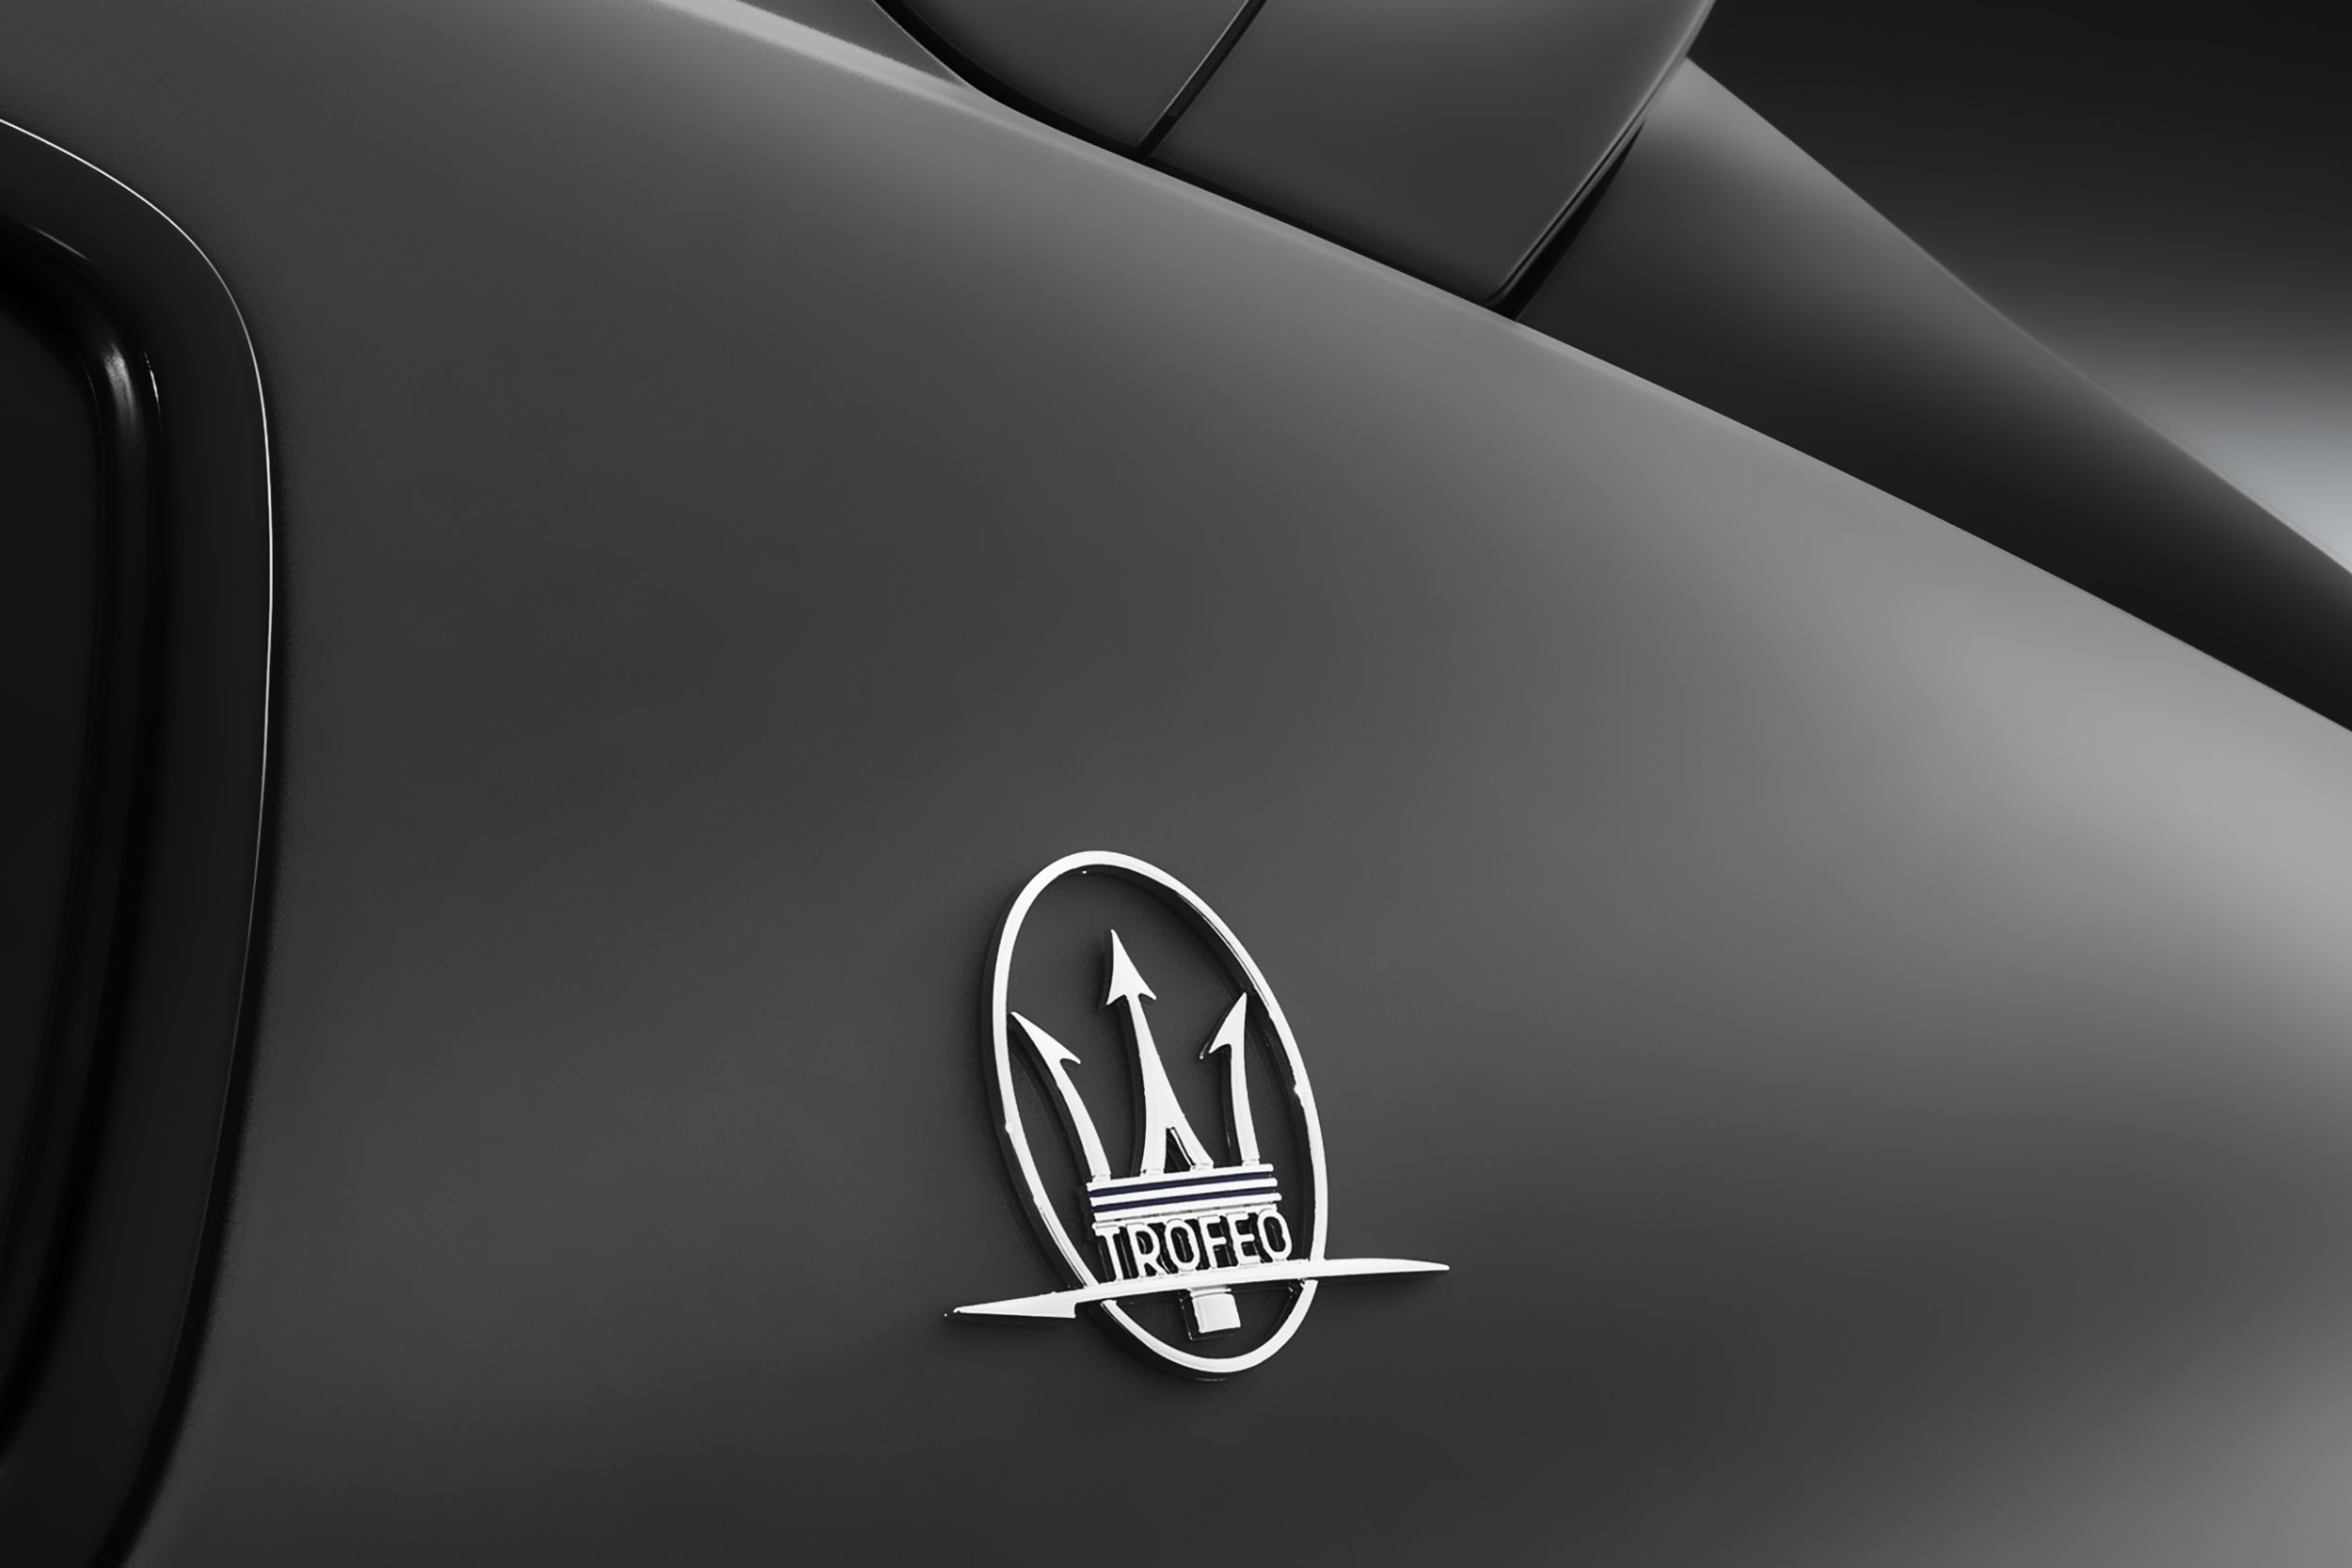 Maserati North America – New Jersey, USA / FEB 2019